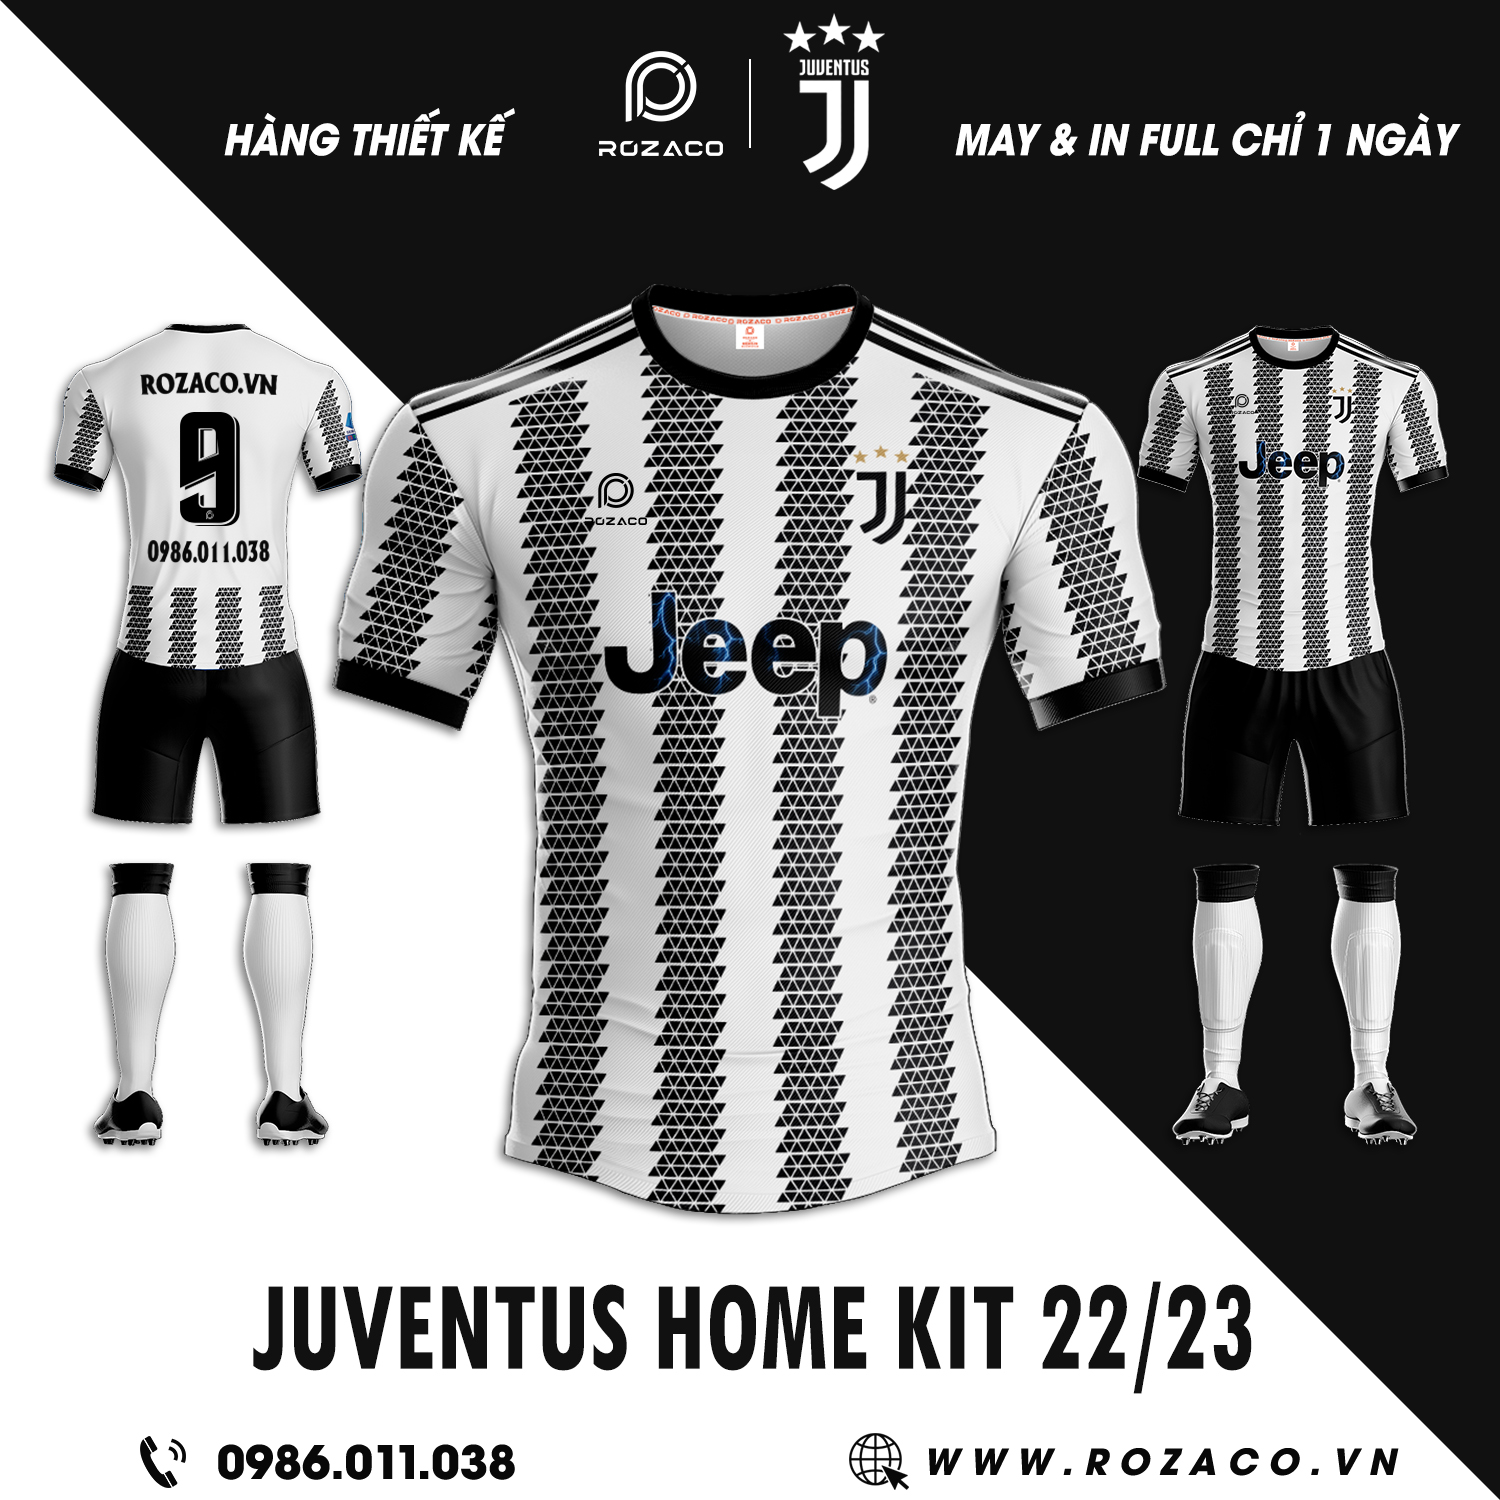 Đây chính là hình ảnh mới nhất về áo câu lạc bộ Juventus sân nhà 2023 với phiên bản sở hữu màu sắc truyền thống của đội tuyển. Đó chính là sự xuất hiện của hai màu đen - trắng với hình thù họa tiết vô cùng độc đáo. 